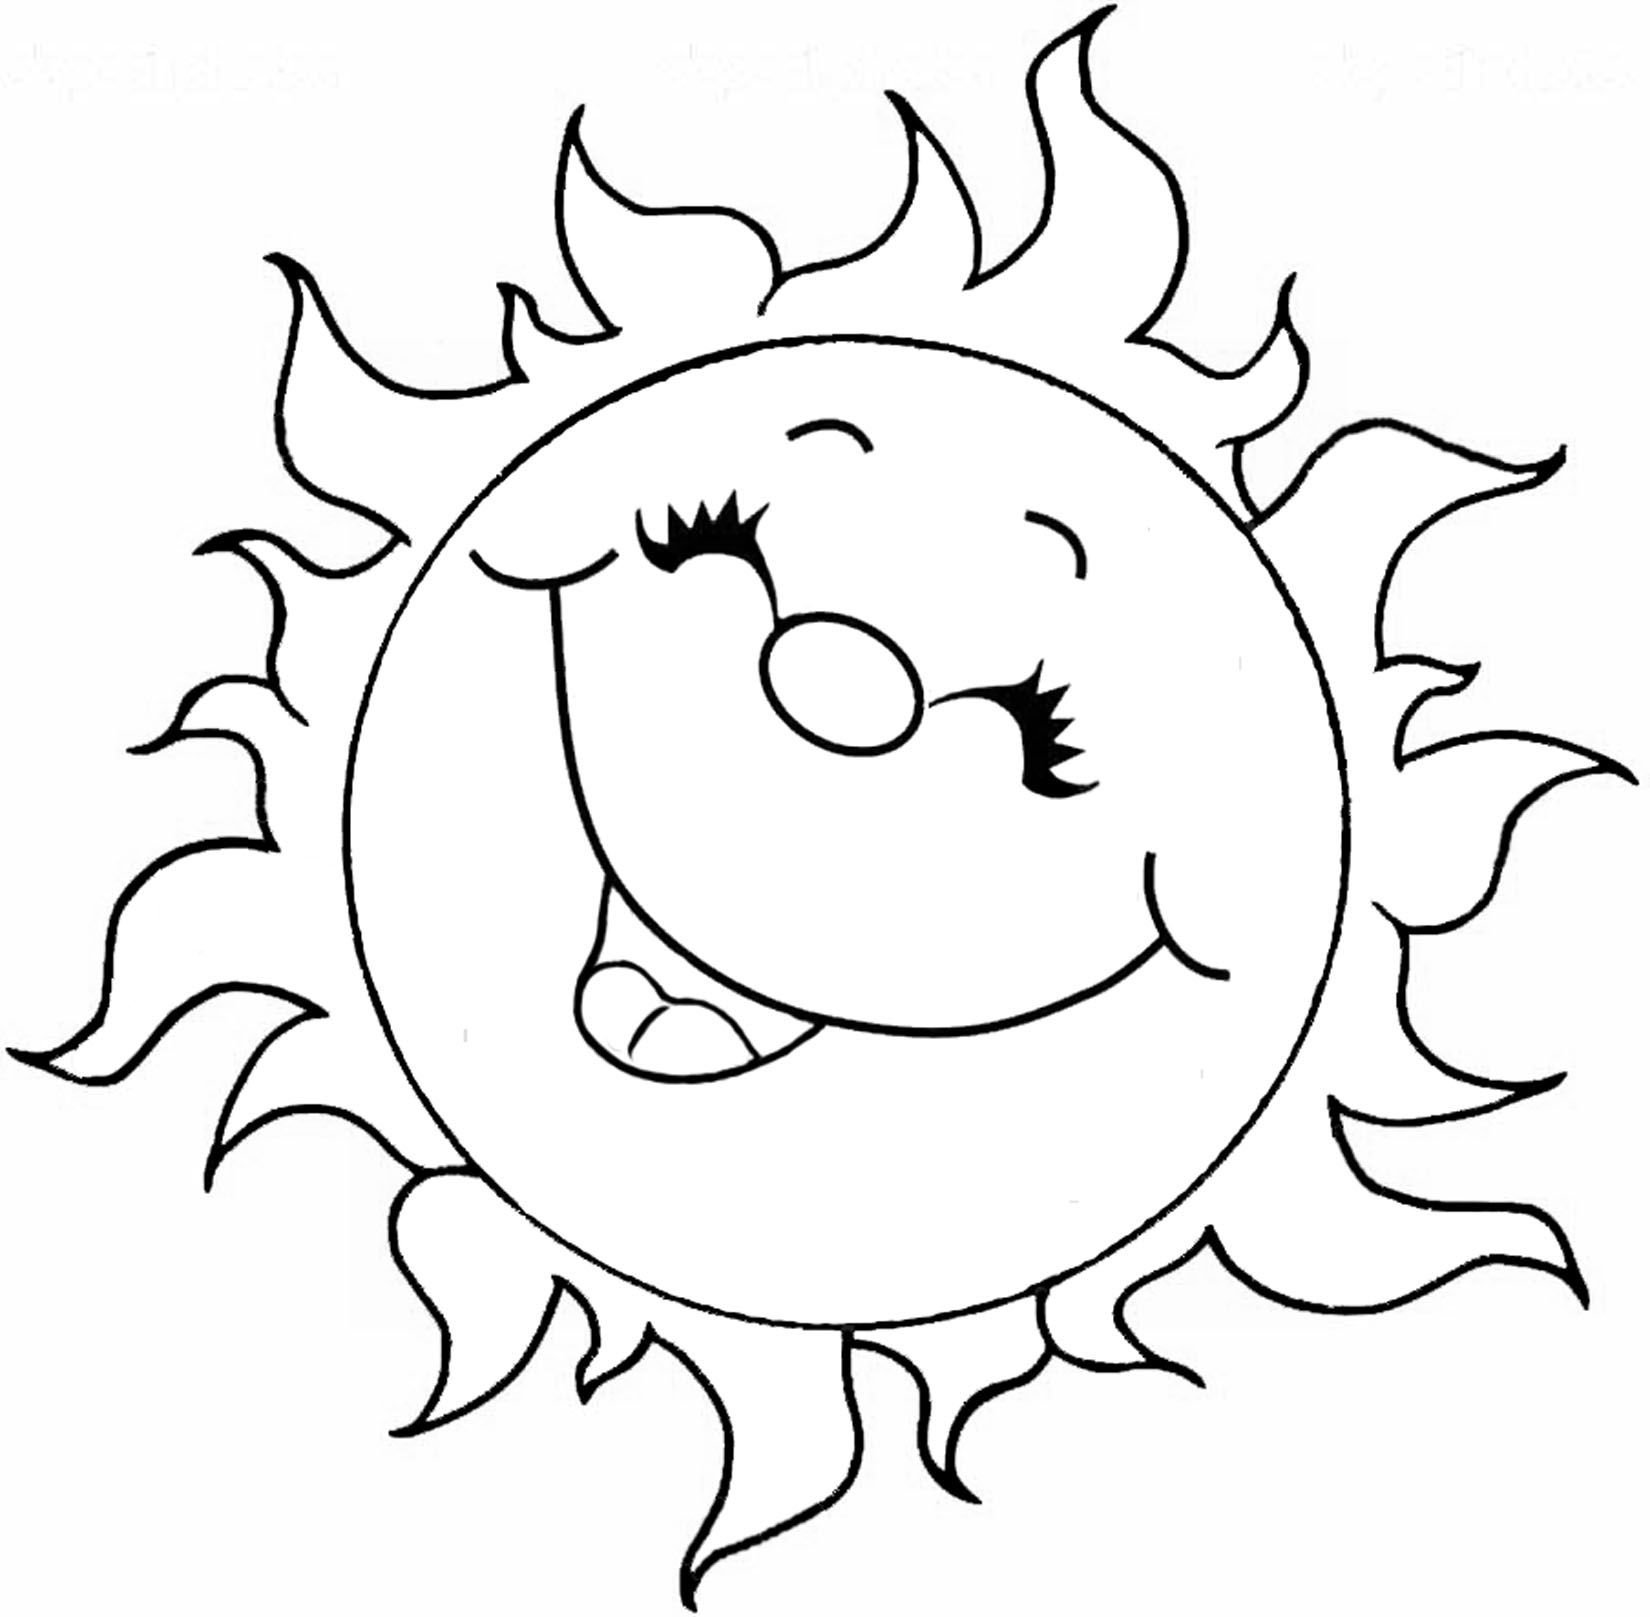 Символ солнца контур